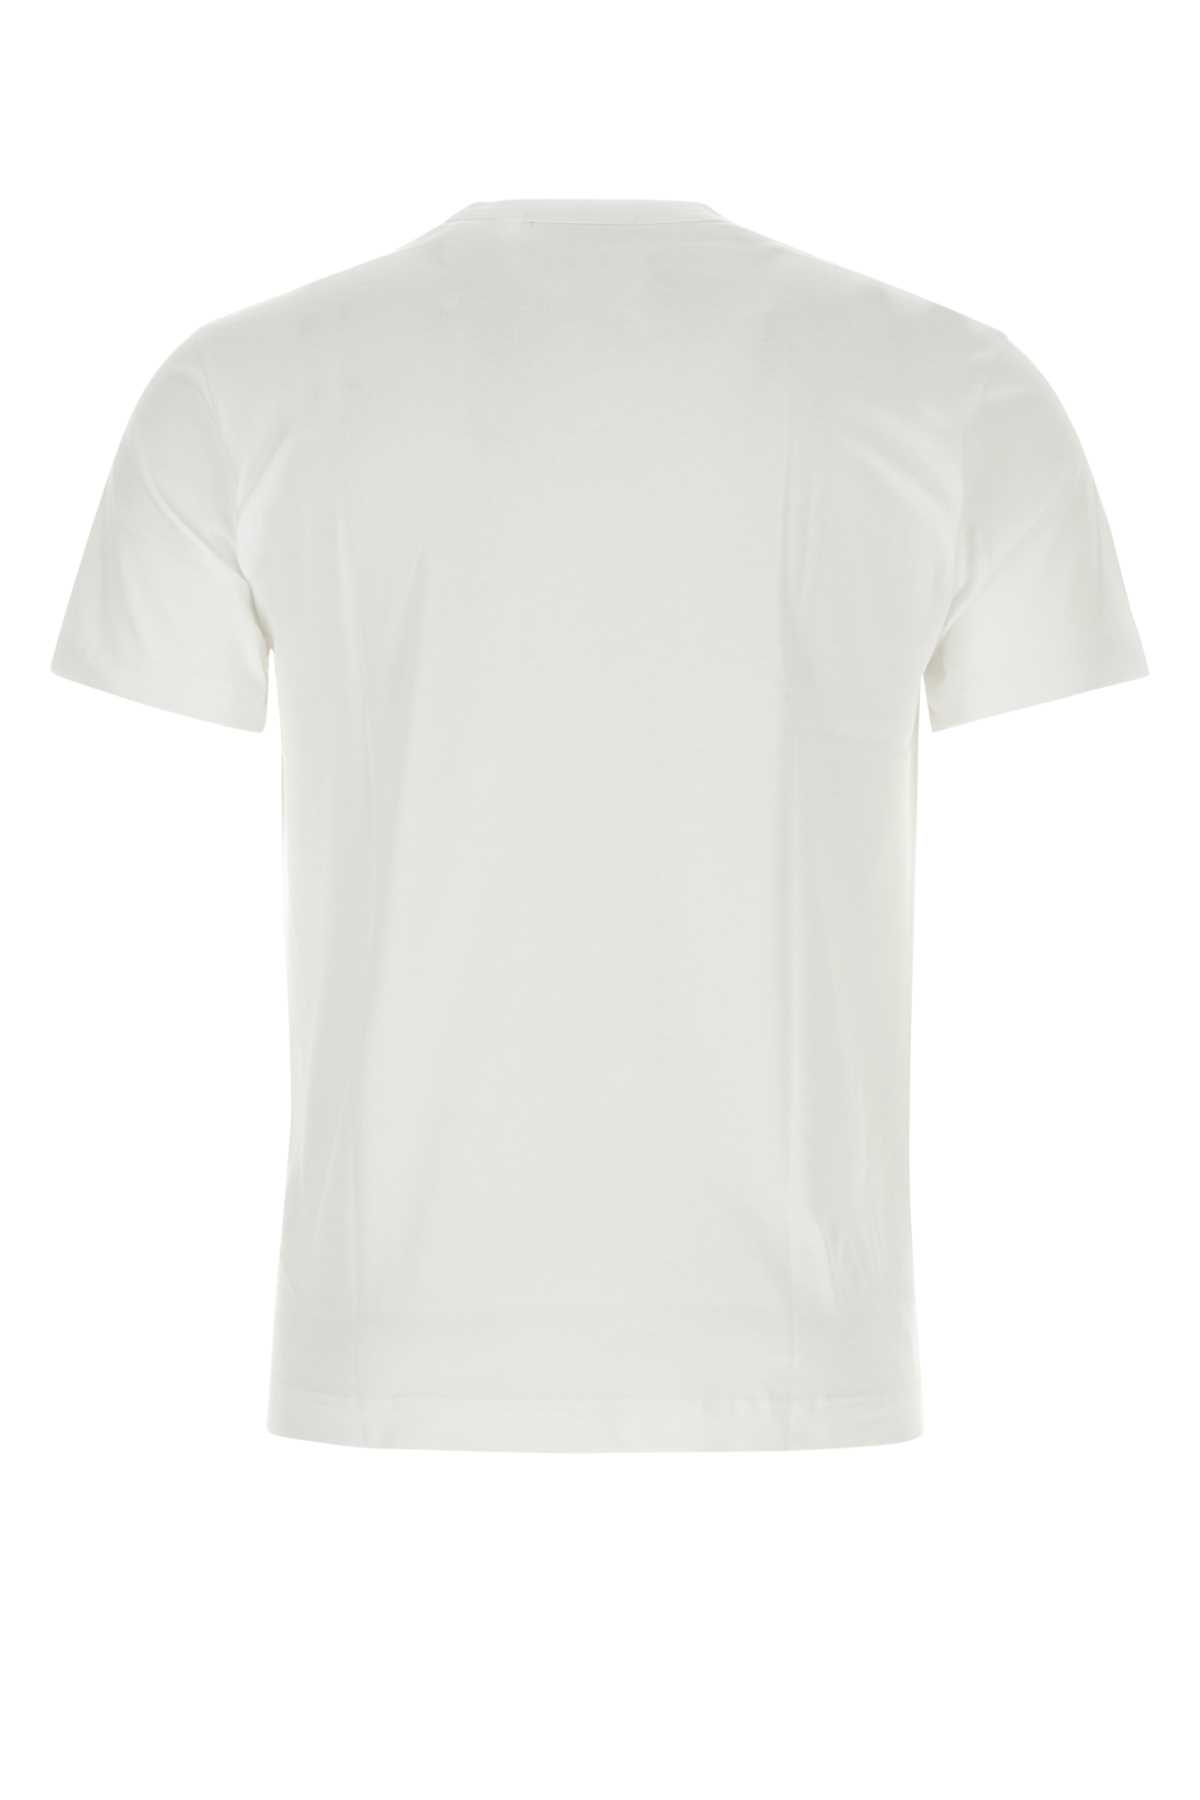 Comme Des Garçons Shirt White Cotton T-shirt